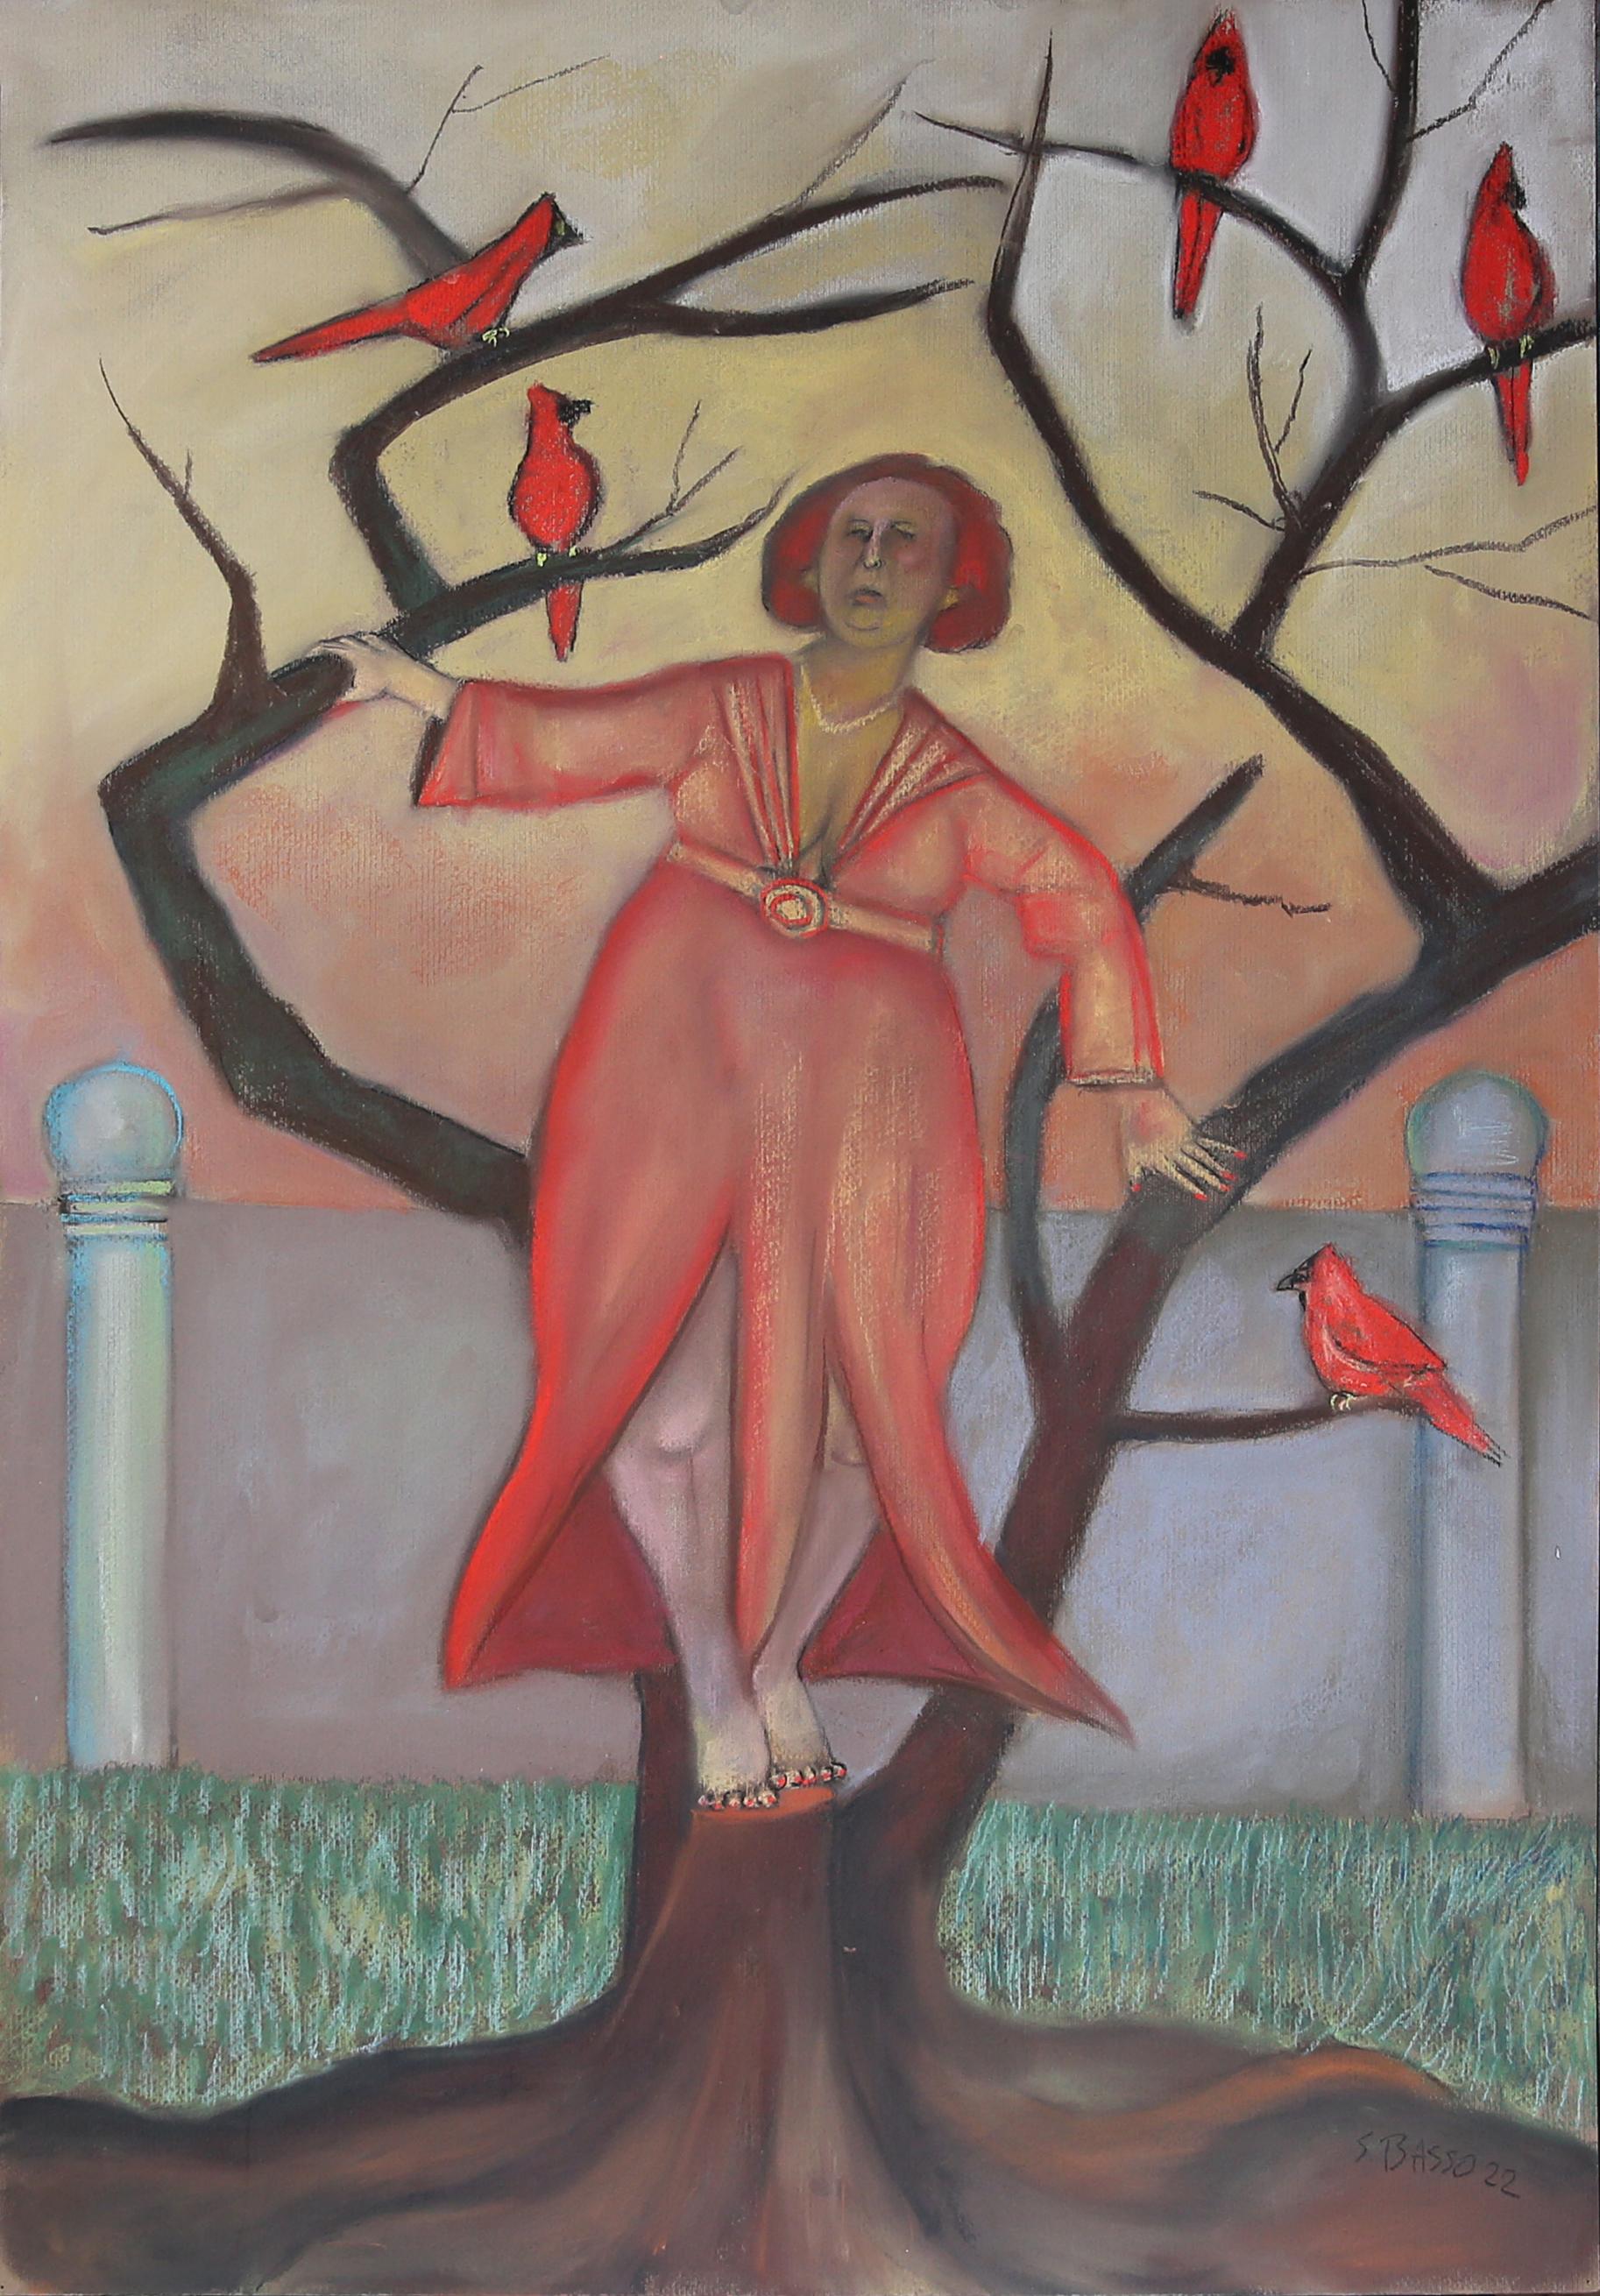 Cardinal Rule - Oiseaux narratifs mythologiques surréalistes arbres couleur automne - humour